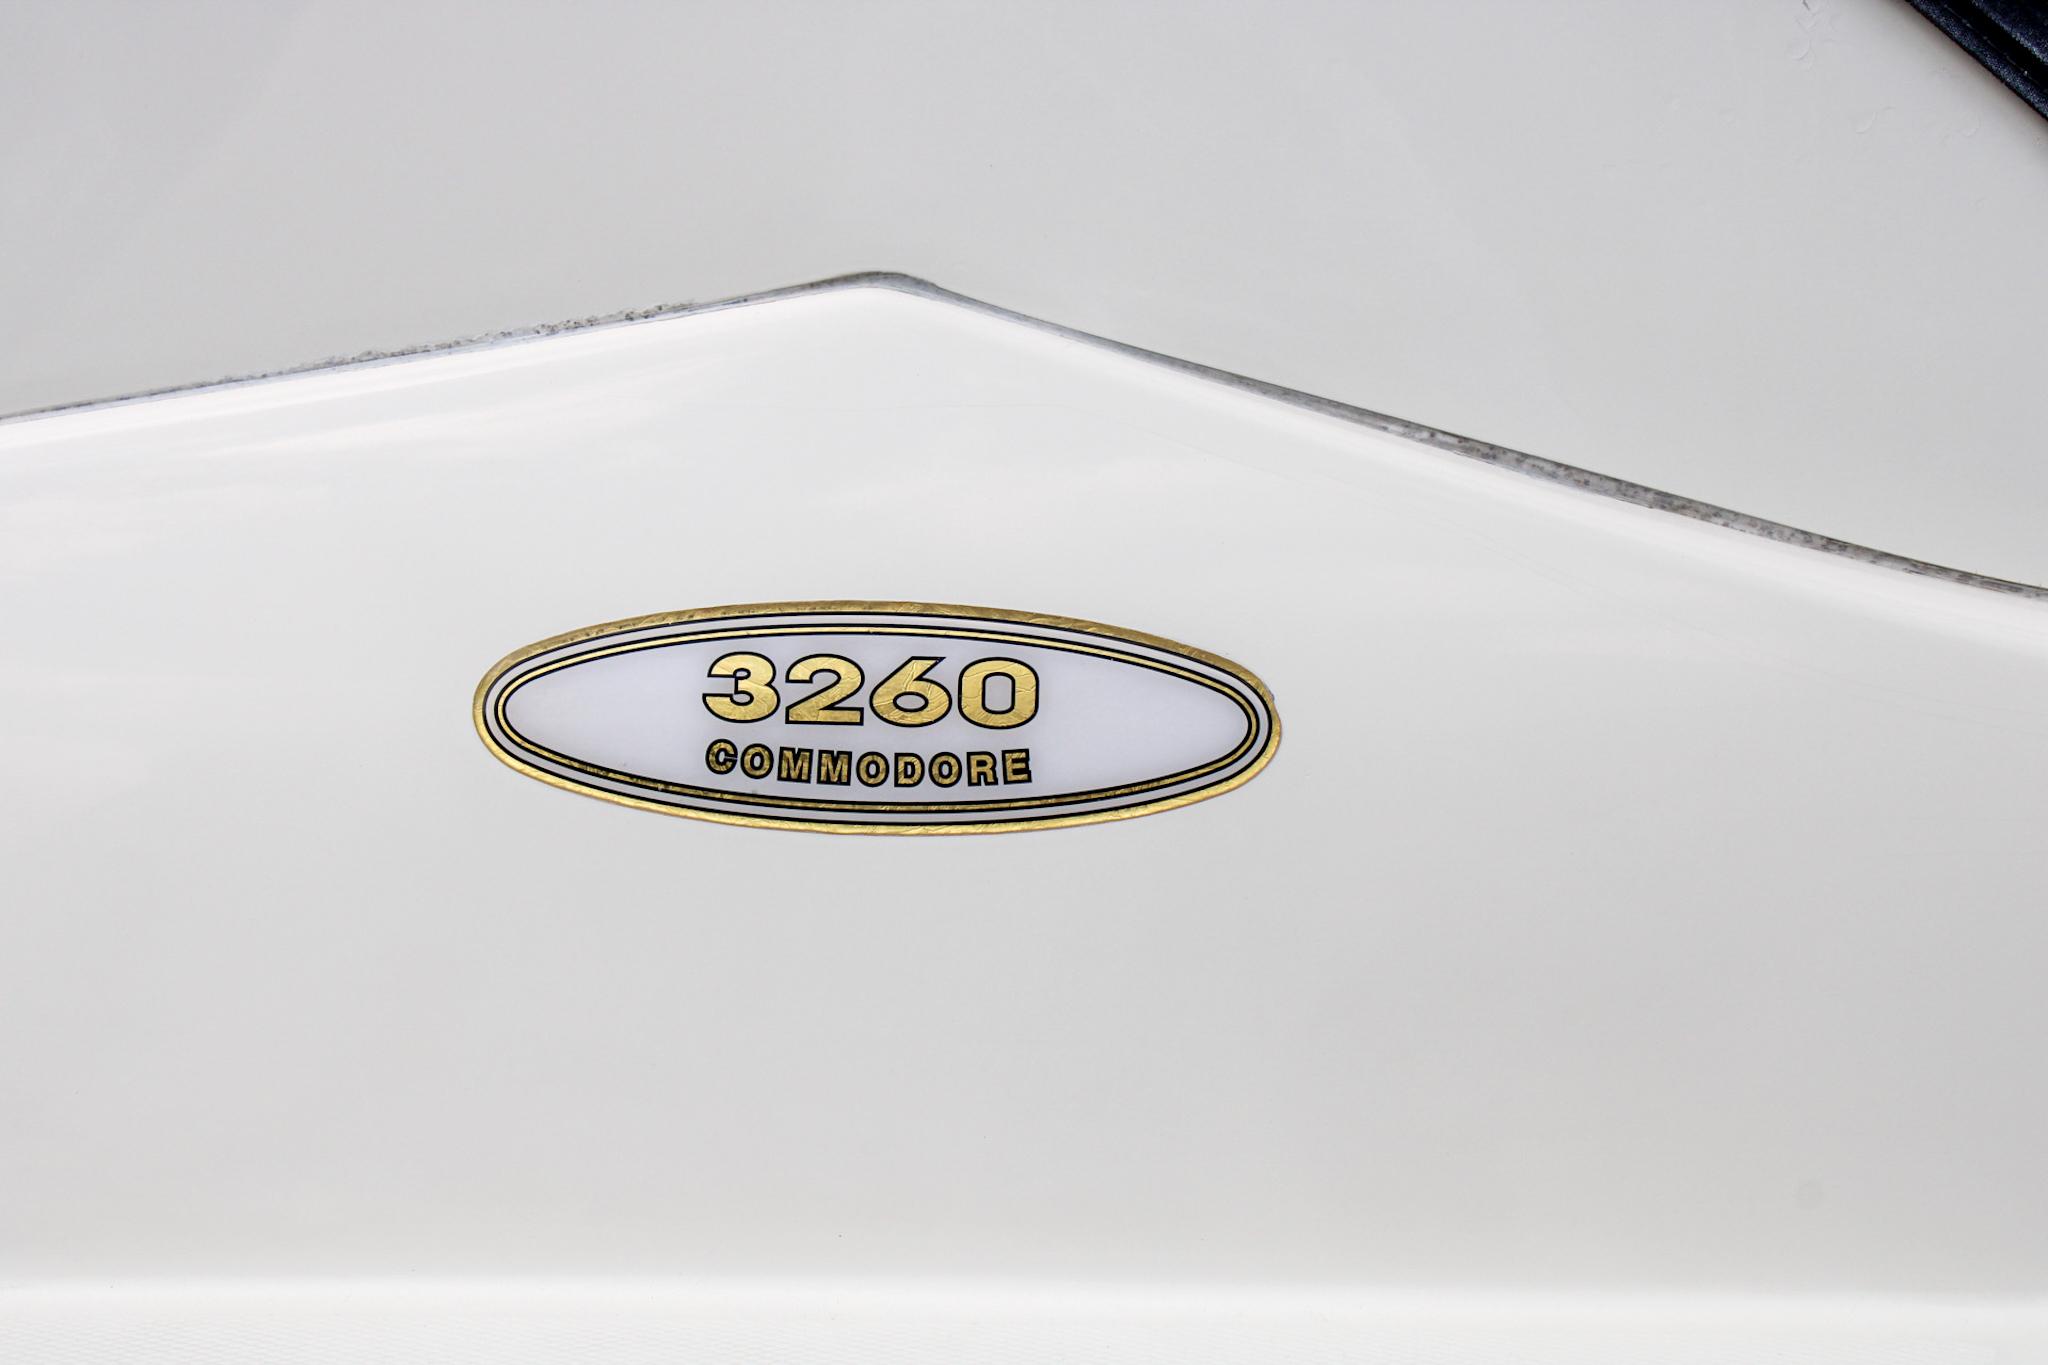 2000 Regal 3260 Commodore